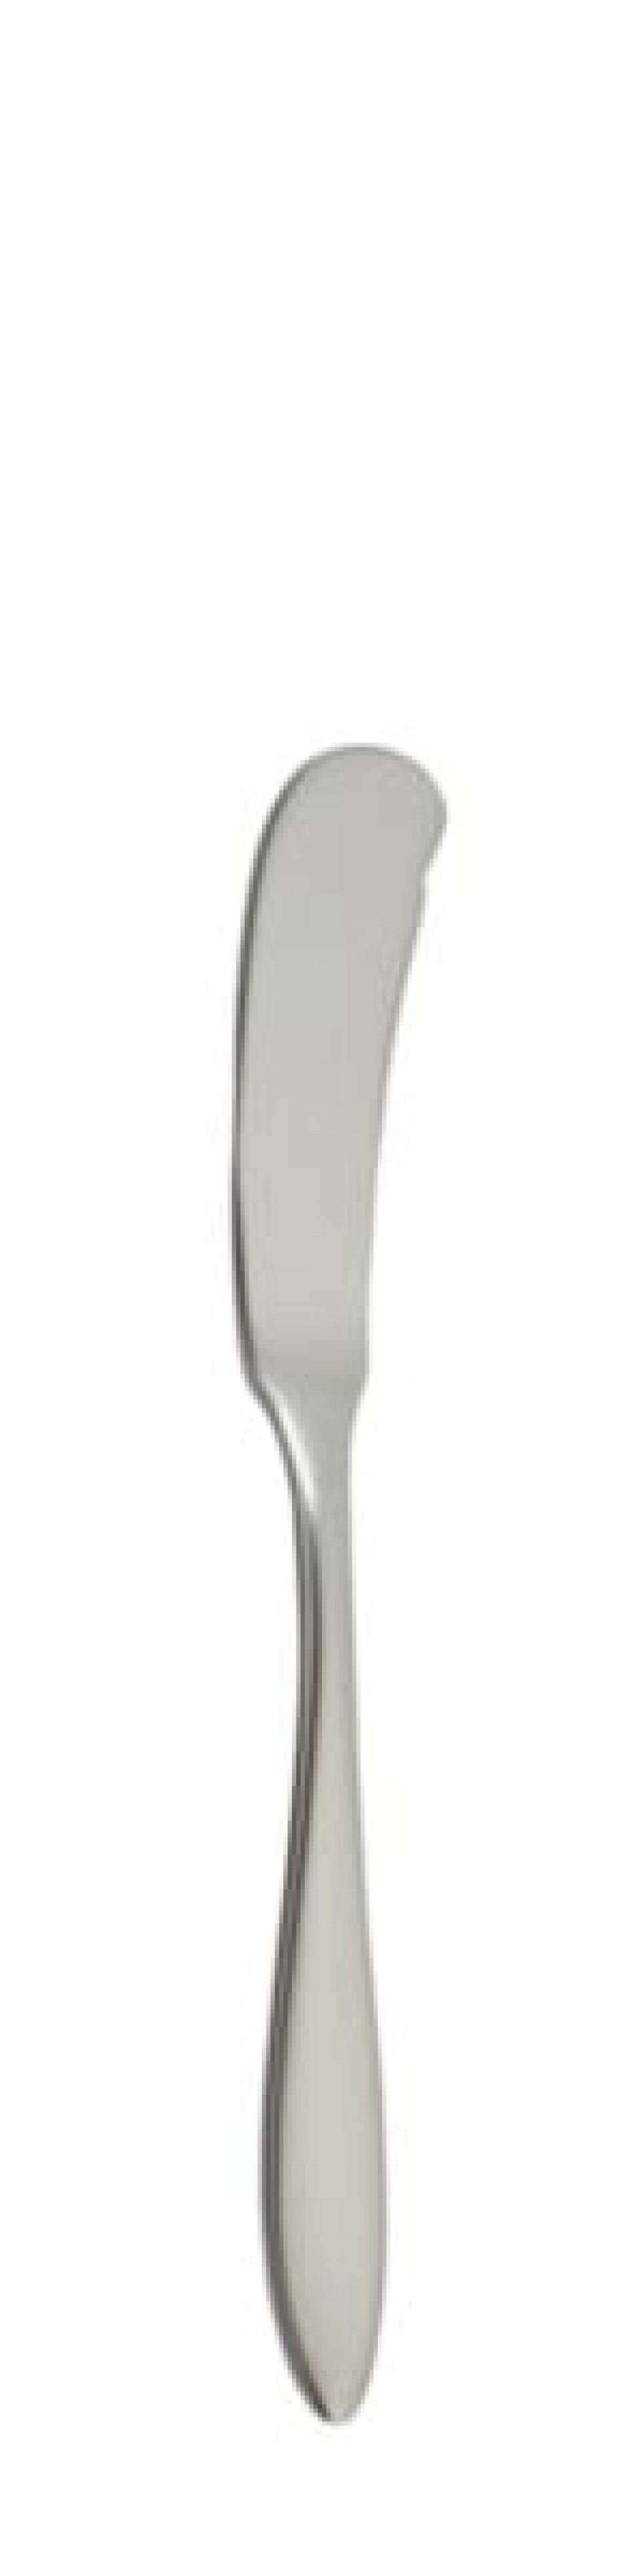 Nóż do masła Terra Retro 170 mm - Solex w grupie Nakrycie stołu / Sztućce / Noże do masła w The Kitchen Lab (1284-21657)